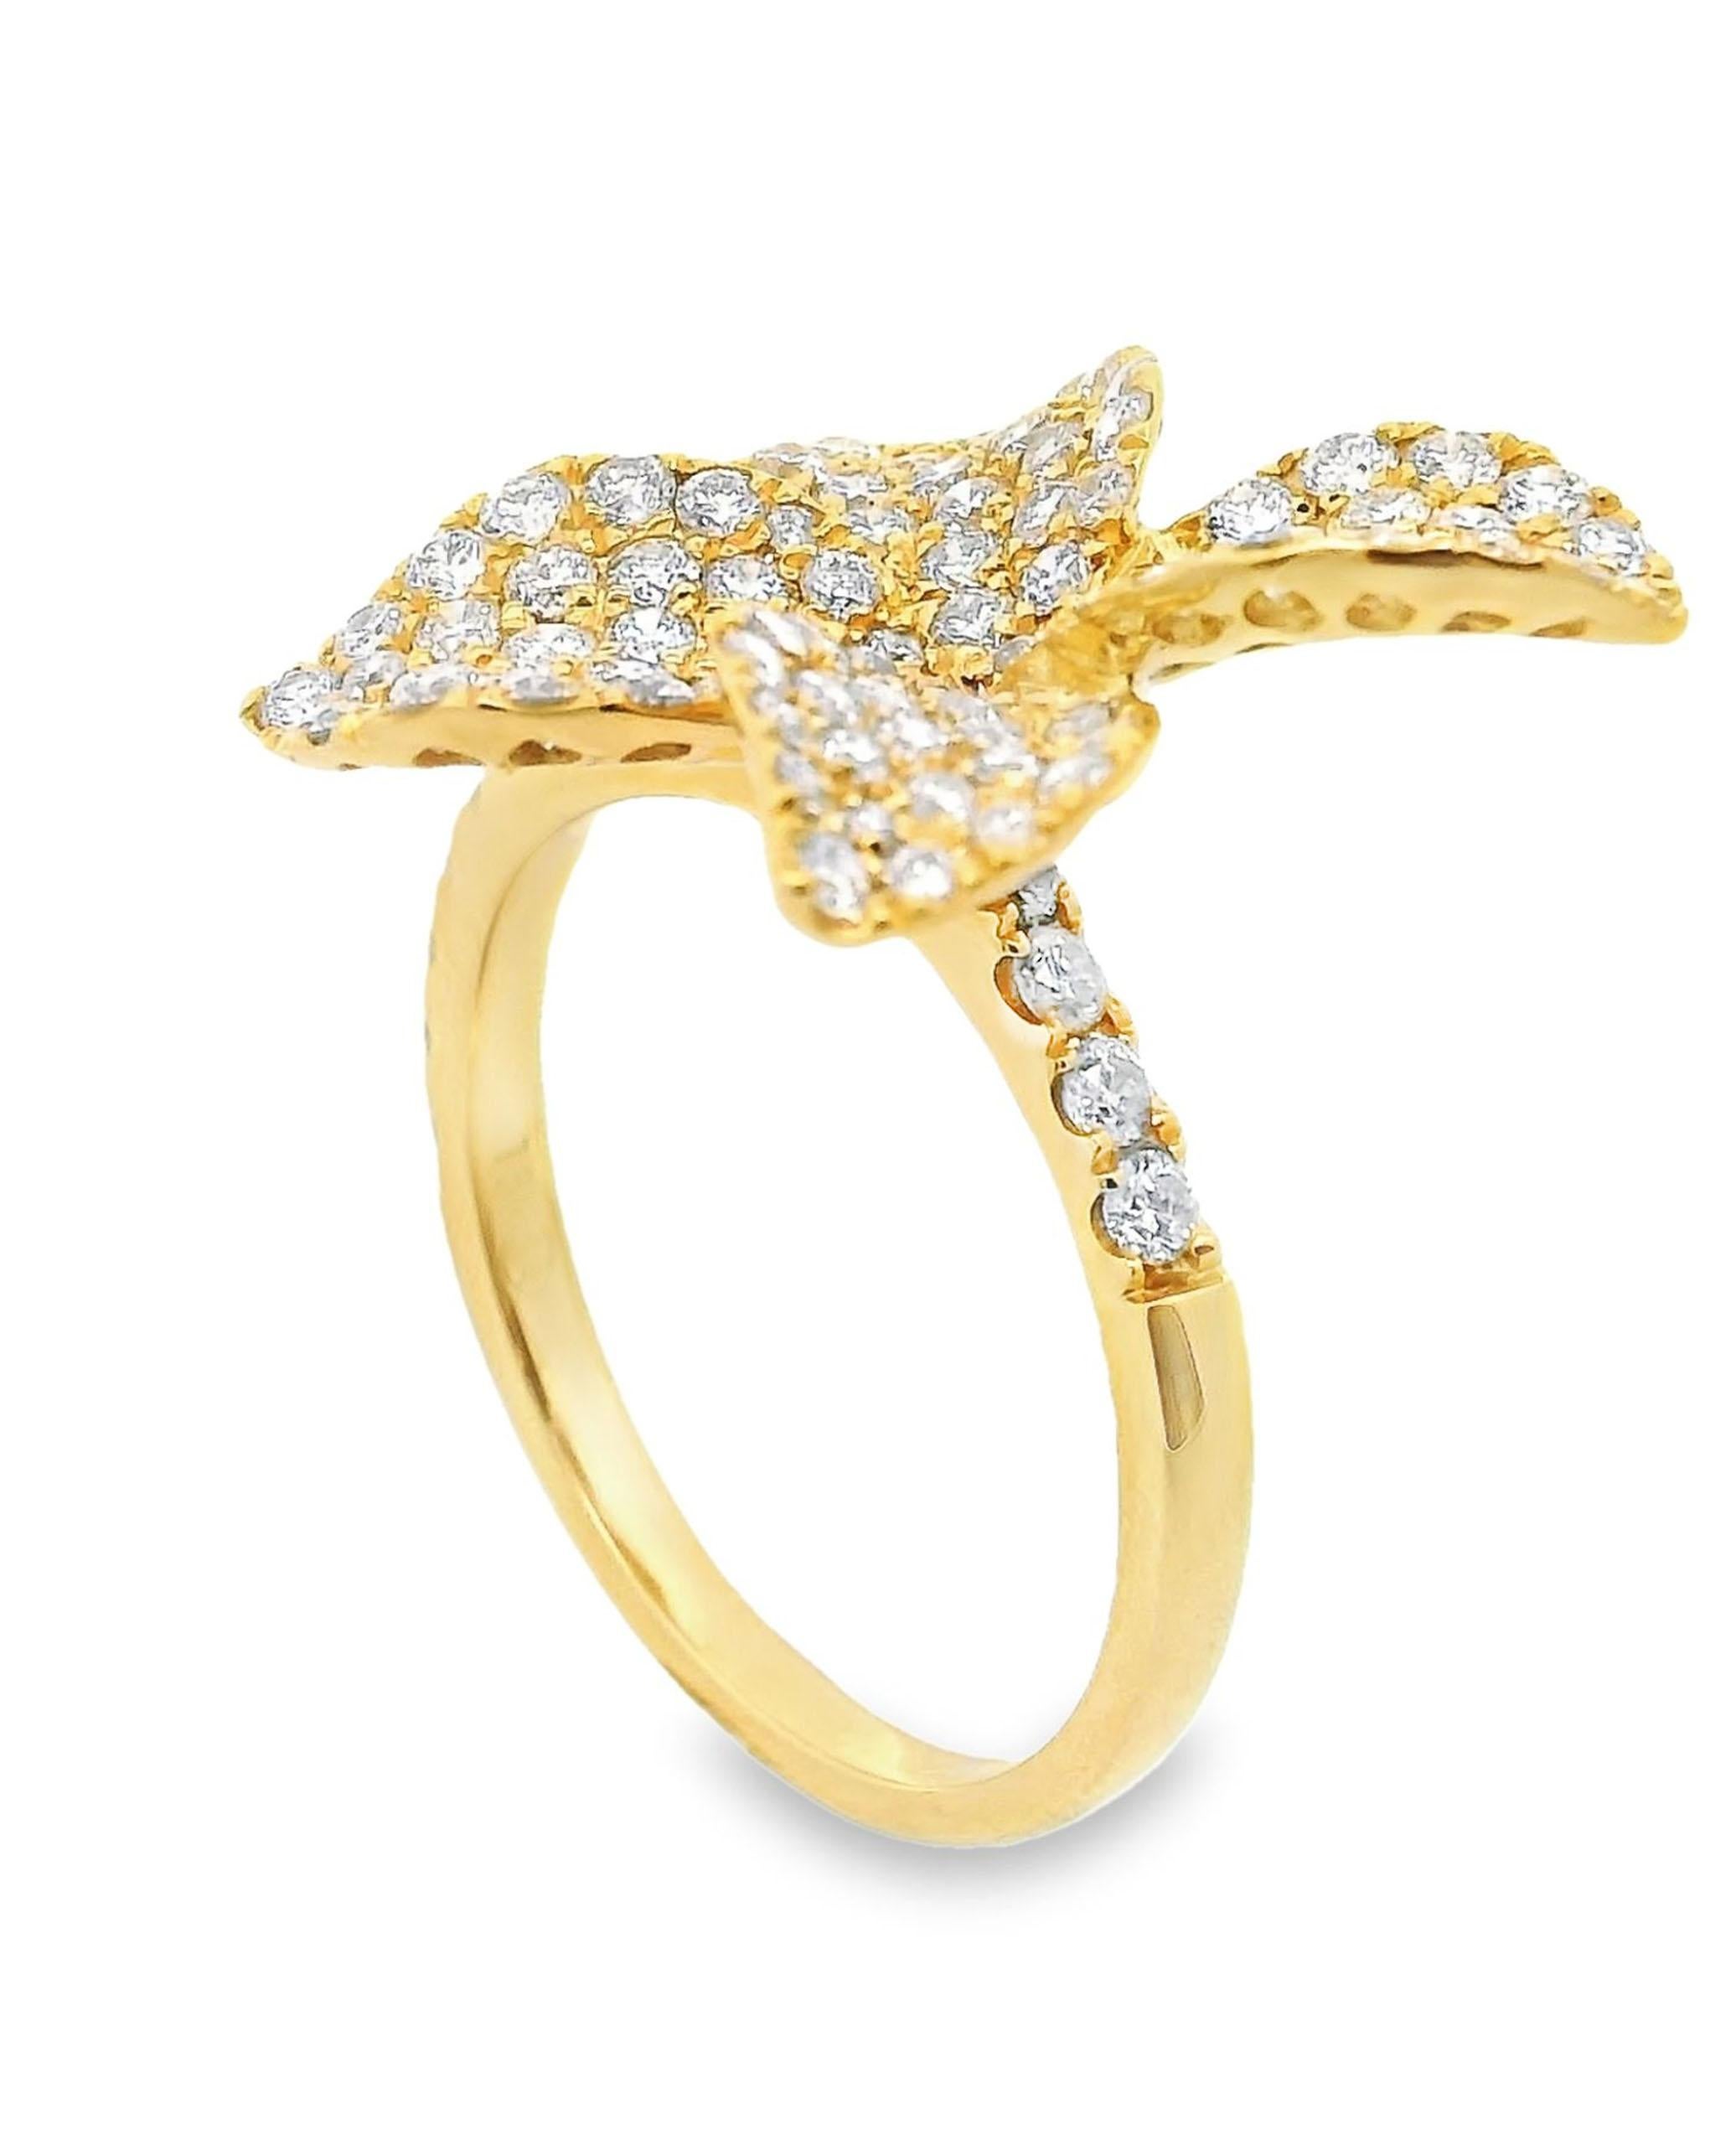 Bague fleur en or jaune 18K avec des diamants ronds de taille brillant pesant 1,40 carats au total.

* Les diamants sont de couleur H/I et de pureté SI.